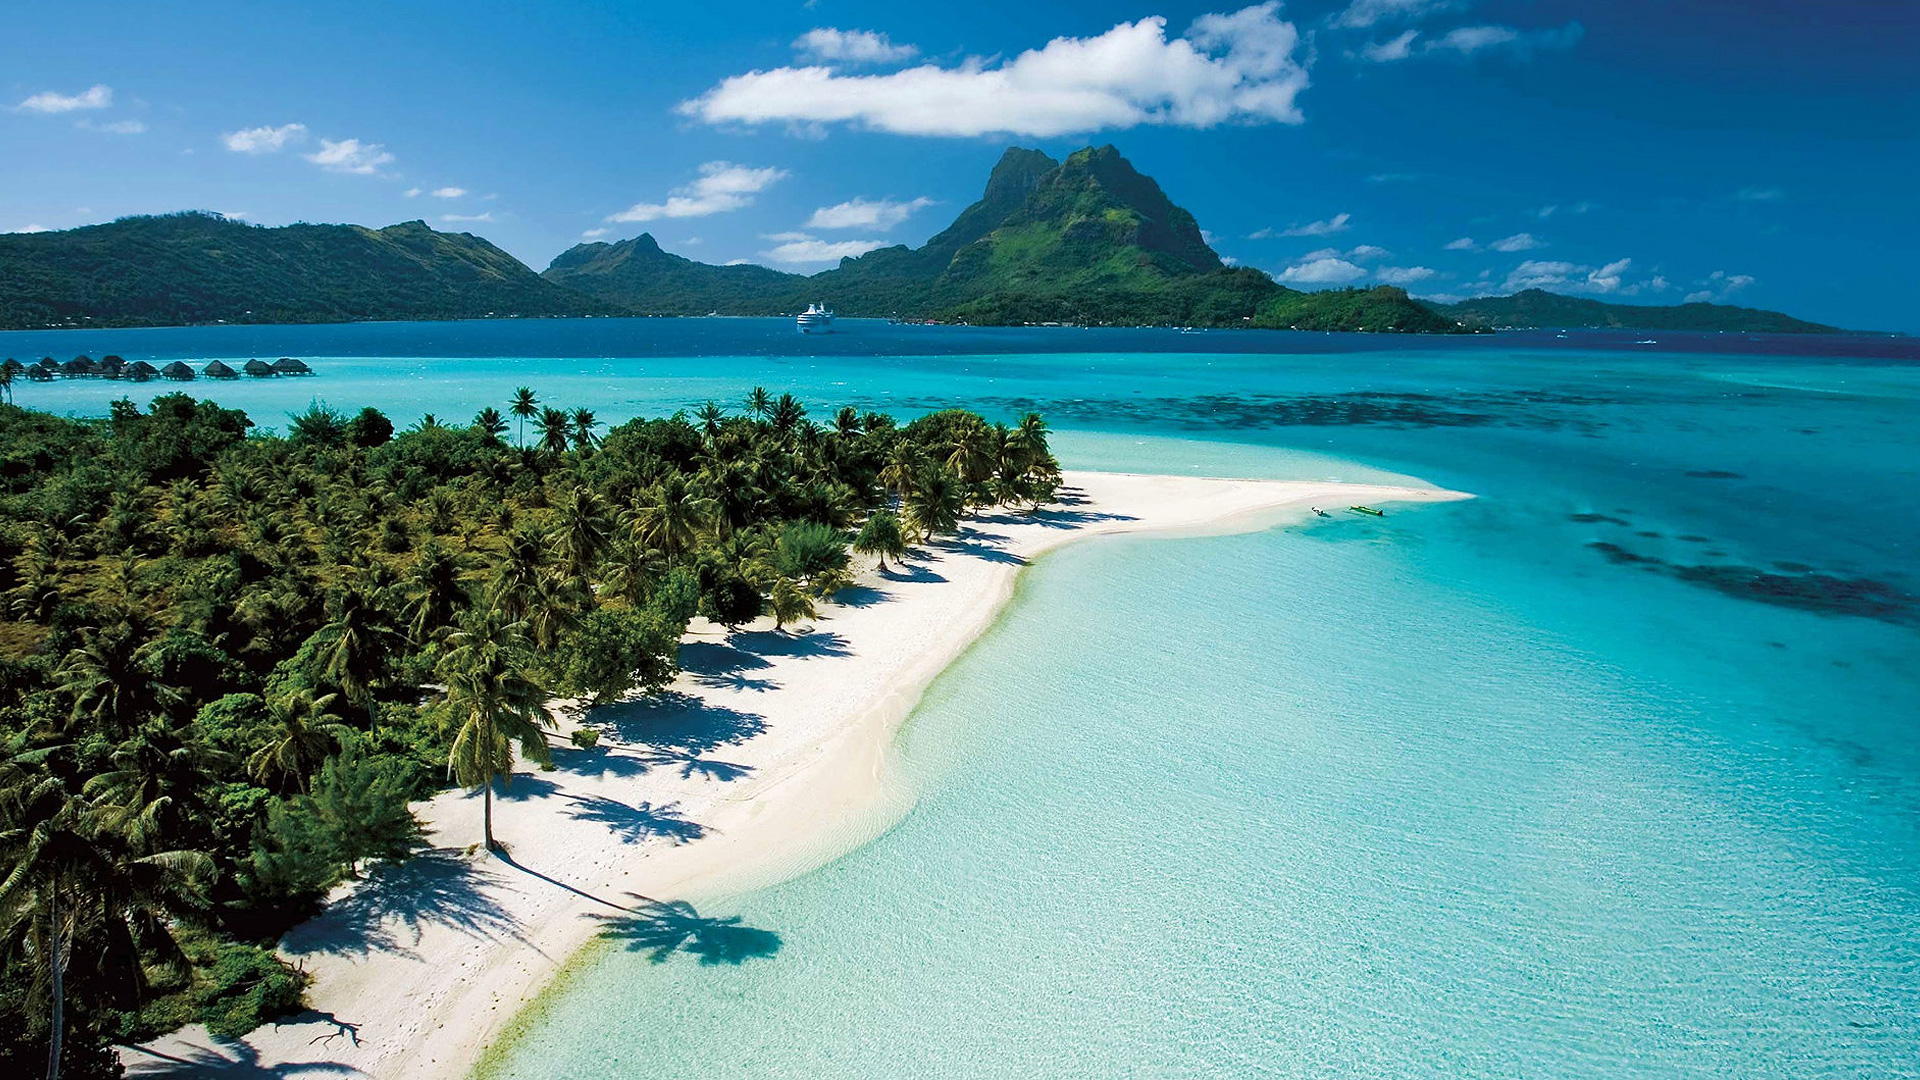 Fonds d'écran Tahiti : tous les wallpapers Tahiti